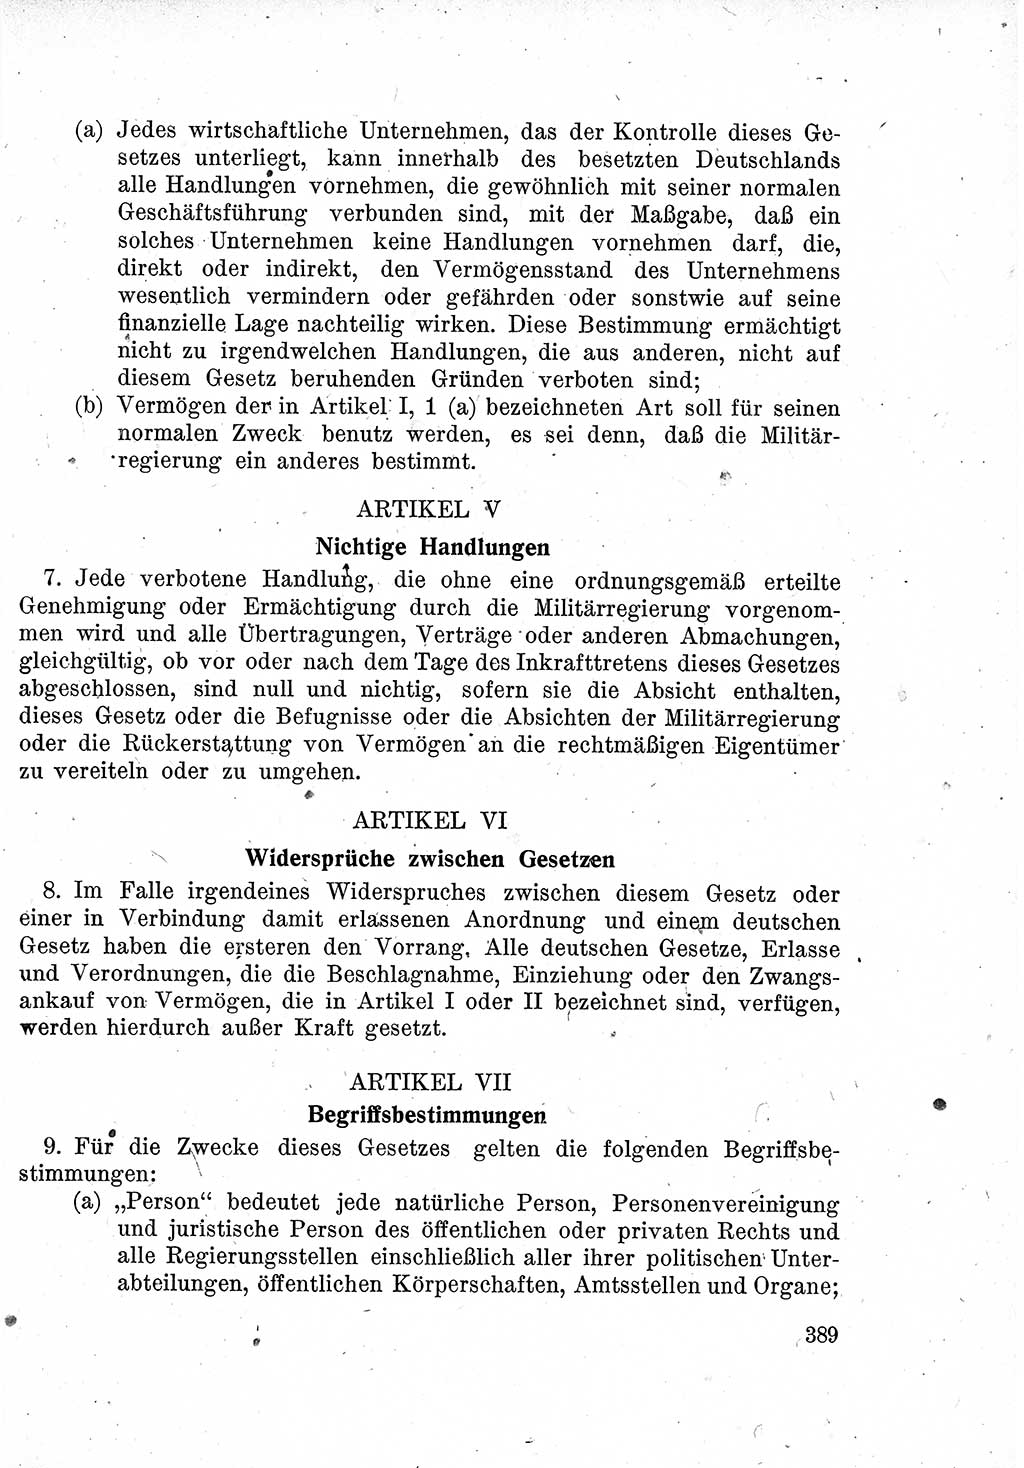 Das Recht der Besatzungsmacht (Deutschland), Proklamationen, Deklerationen, Verordnungen, Gesetze und Bekanntmachungen 1947, Seite 389 (R. Bes. Dtl. 1947, S. 389)